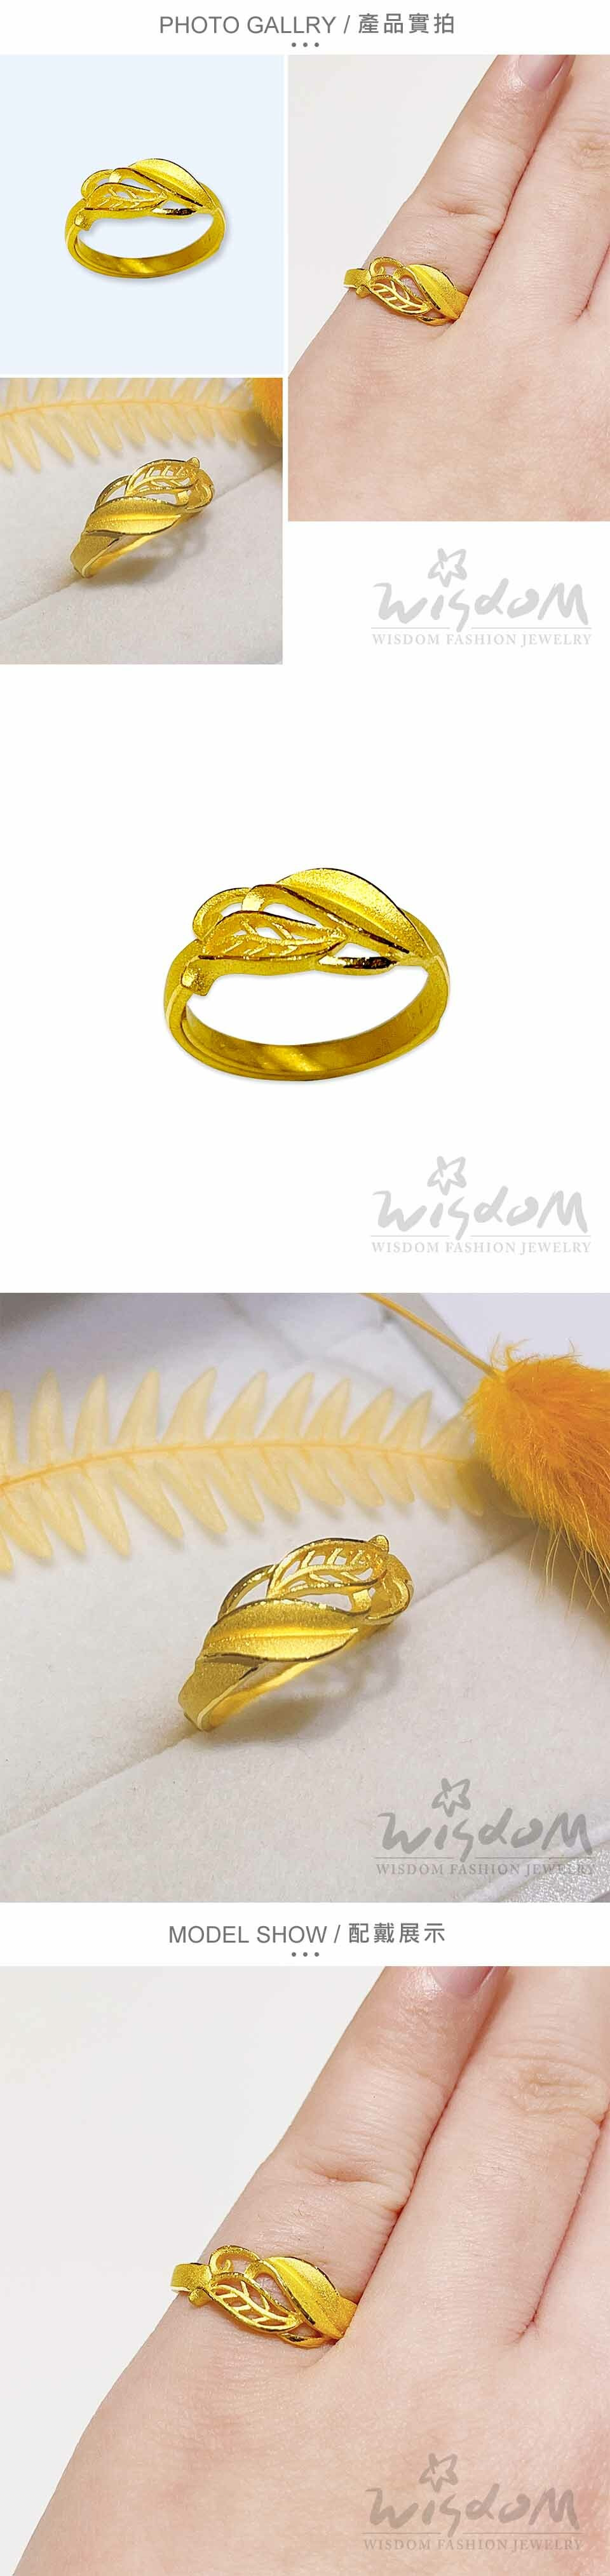 黃金戒指-黃金首飾-禮物推薦